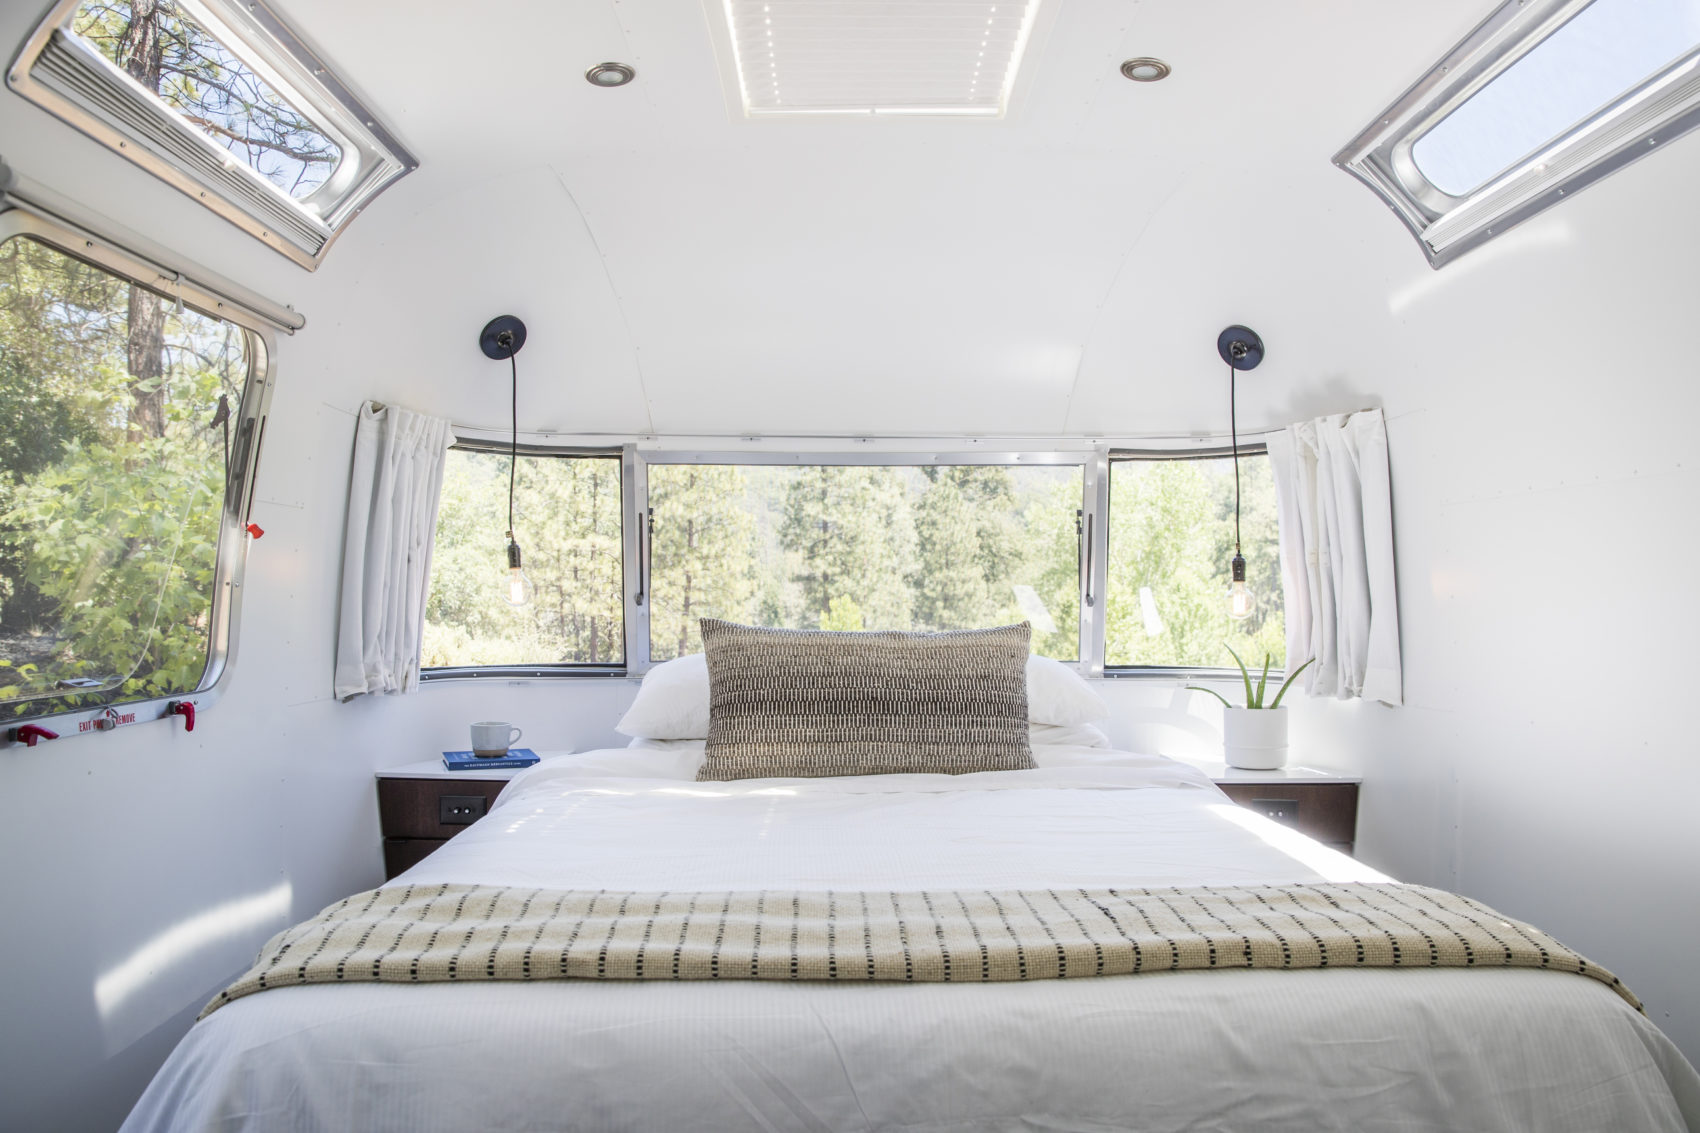 Autopark Airstream trailer bedroom